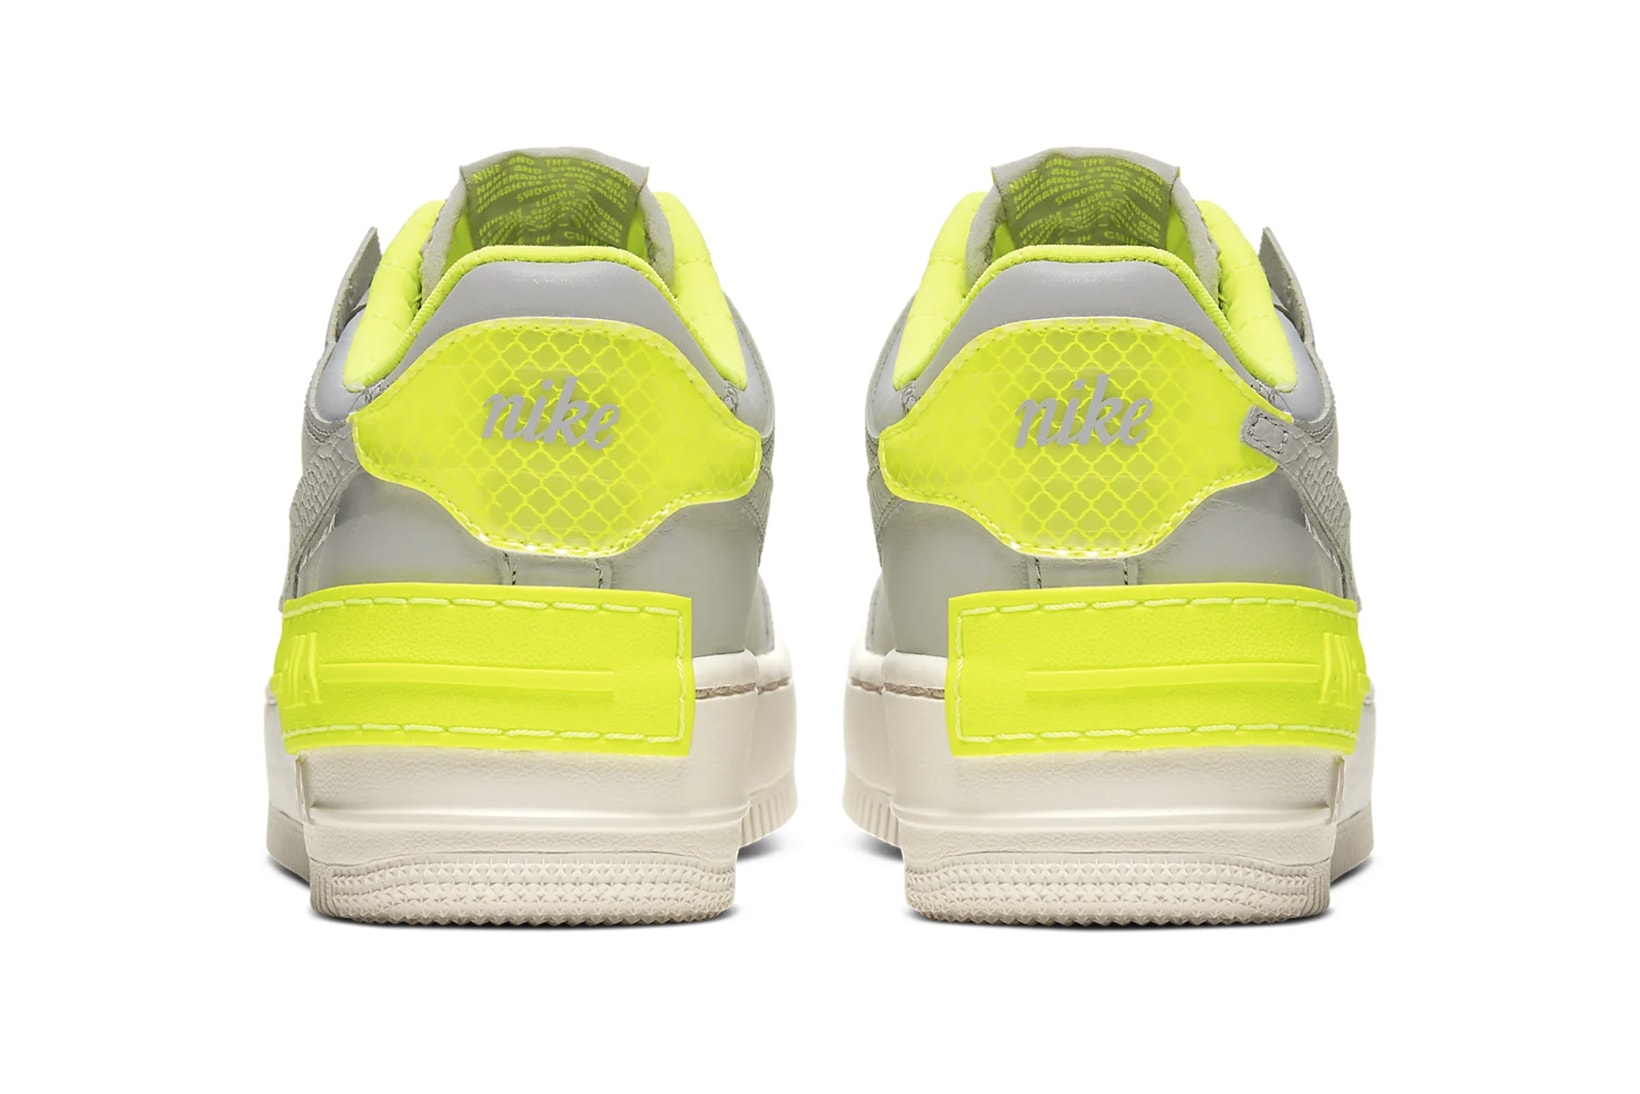 nike air force 1 shadow womens sneakers grey neon yellow shoes footwear sneakerhead 